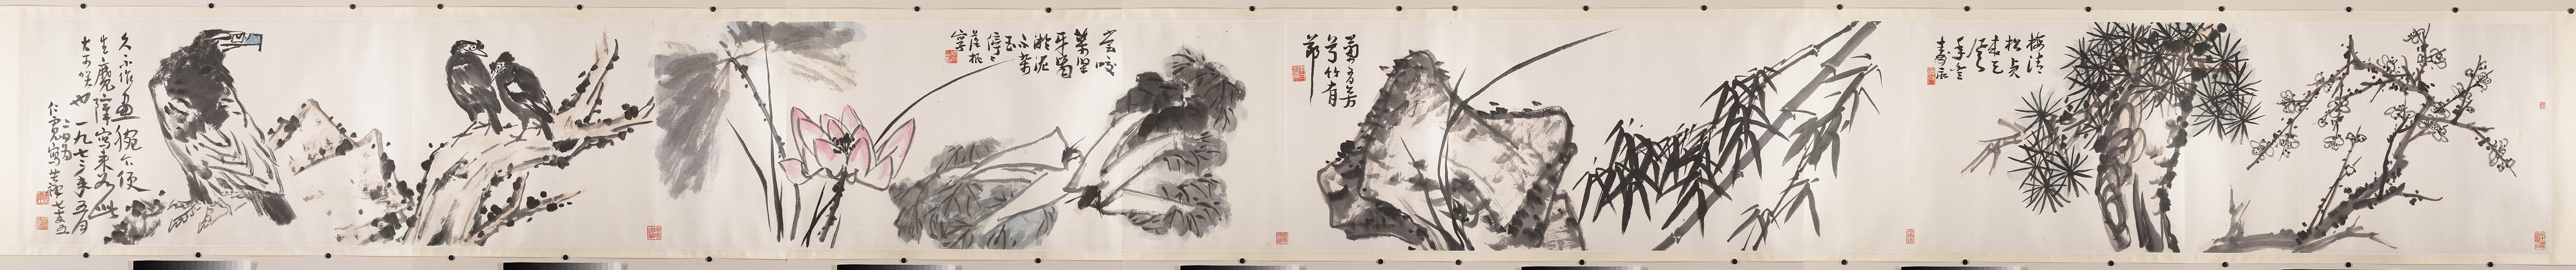 李苦禅 花鸟树石图卷 832×87 美国大都会艺术博物馆(1).jpg